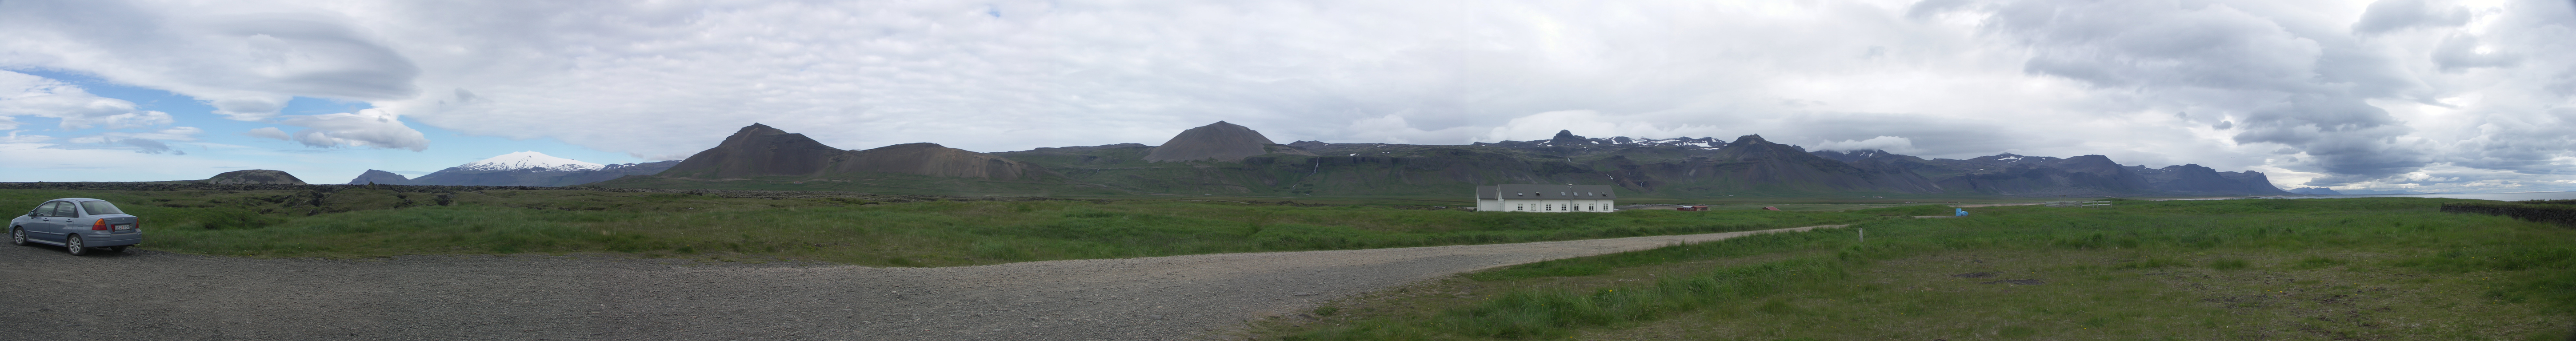 panorama uitzicht Snaefellness en omgeving, IJsland